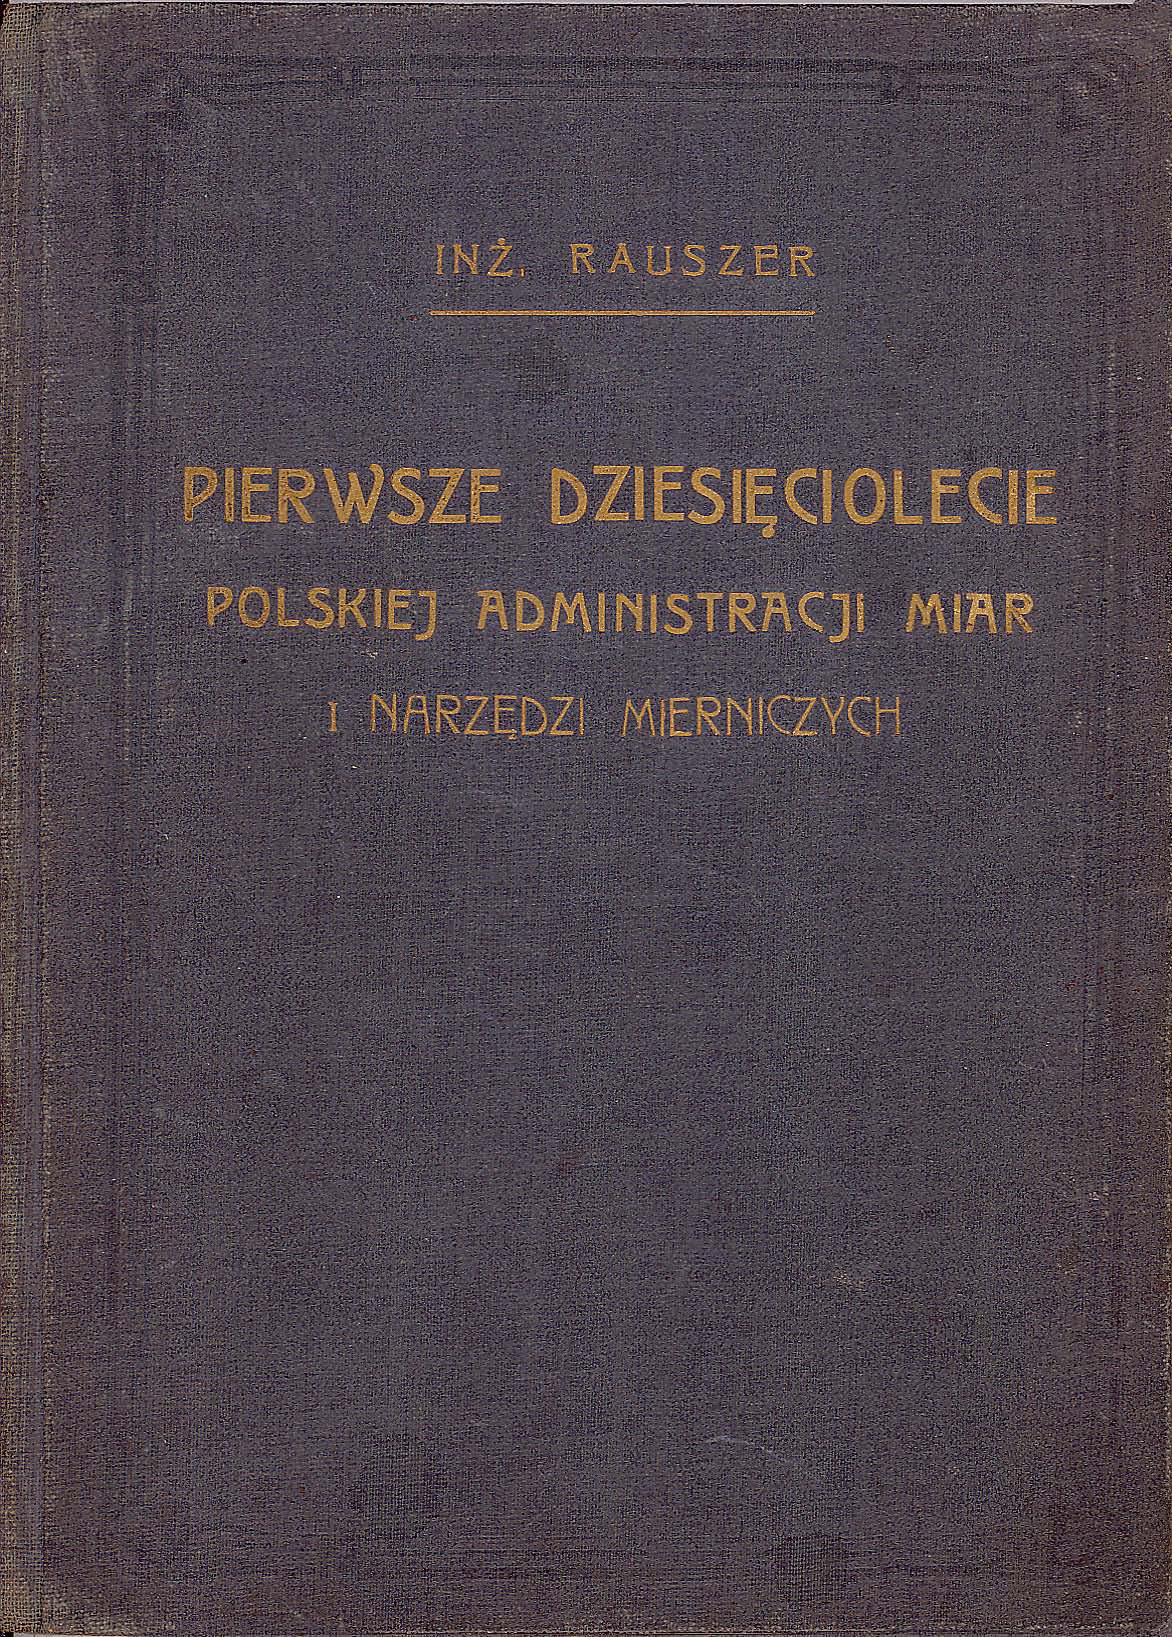 Okładka publikacji inżyniera Rauszera "Pierwsze dziesięciolecie polskiej administracji miar i narzędzi mierniczych"